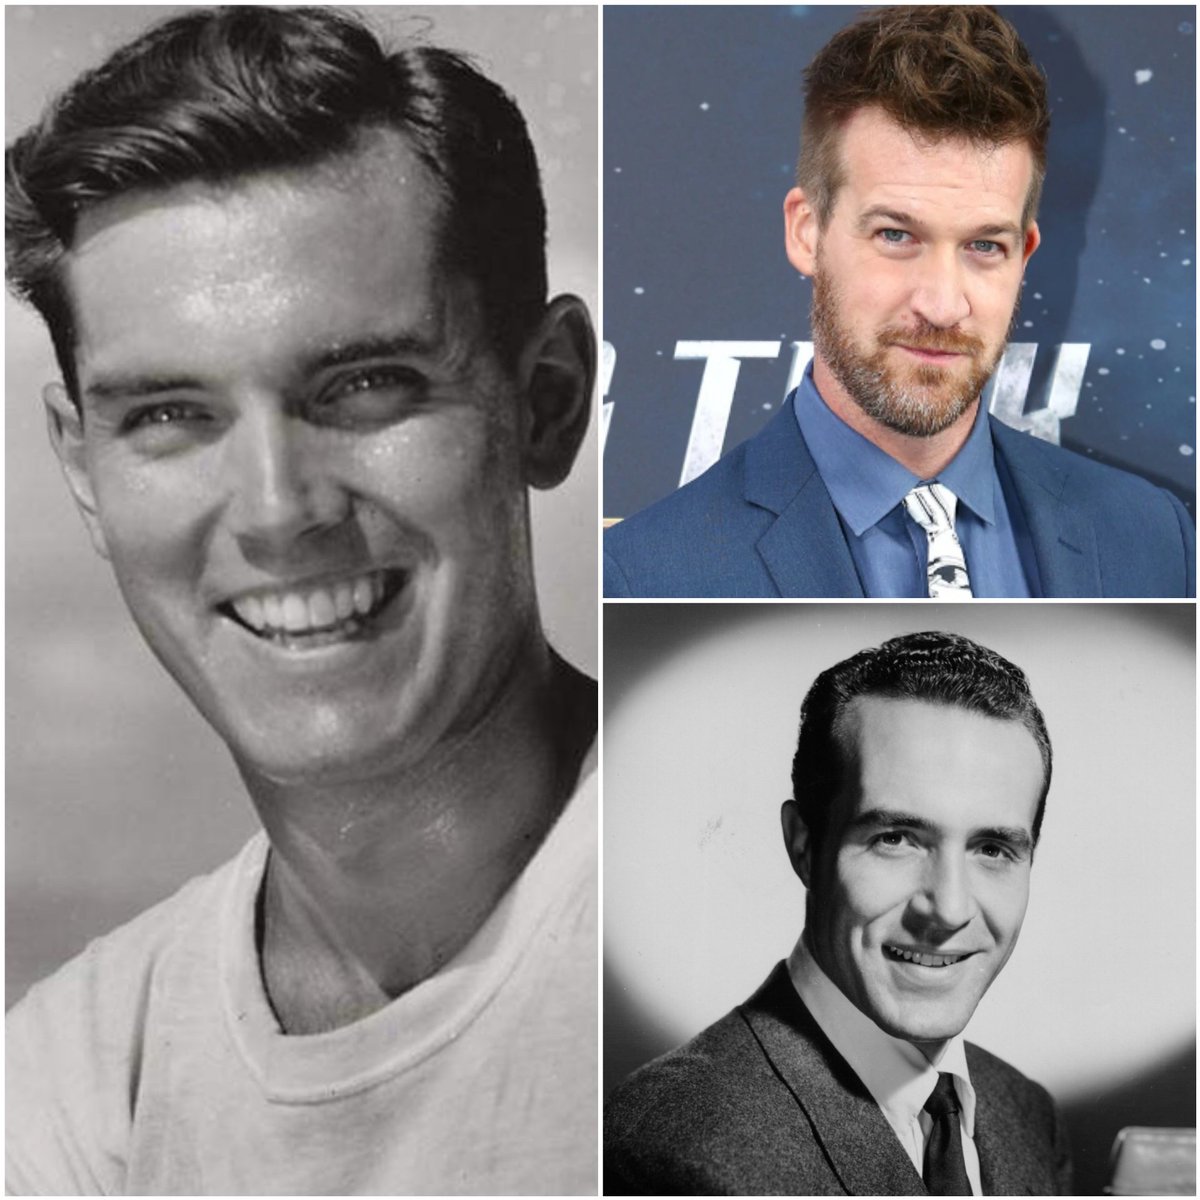 Three handsome, talented Trek men born today. #JeffreyHunter 1926, #KenMitchell 1974 and #RicardoMontalbán 1920. 
#StarTrek #botd